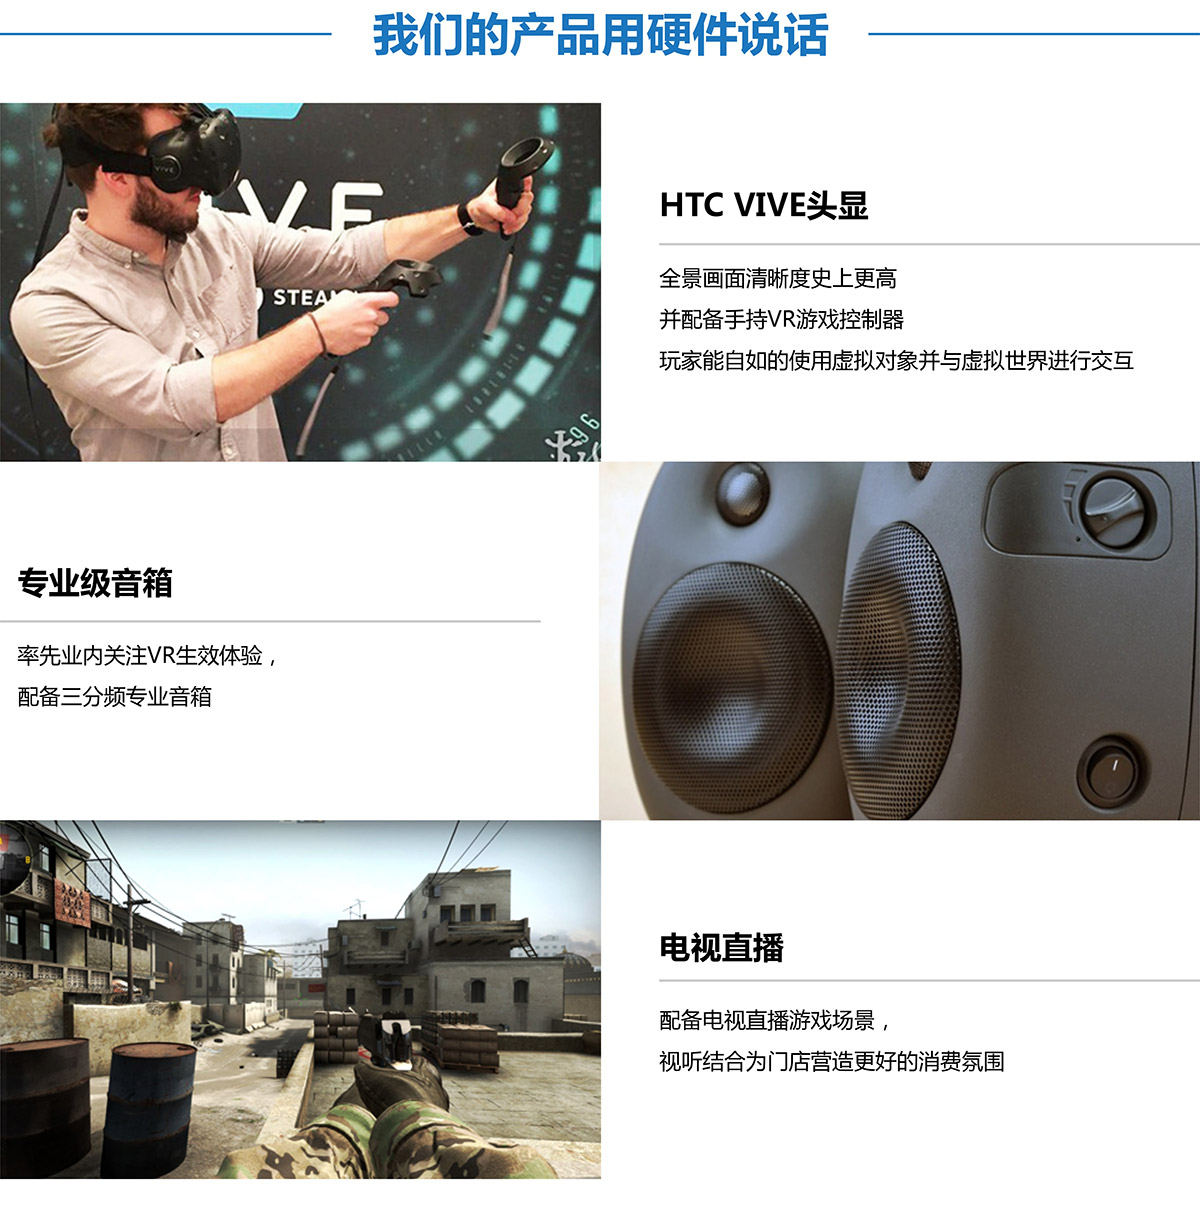 重庆VR探索用硬件说话.jpg